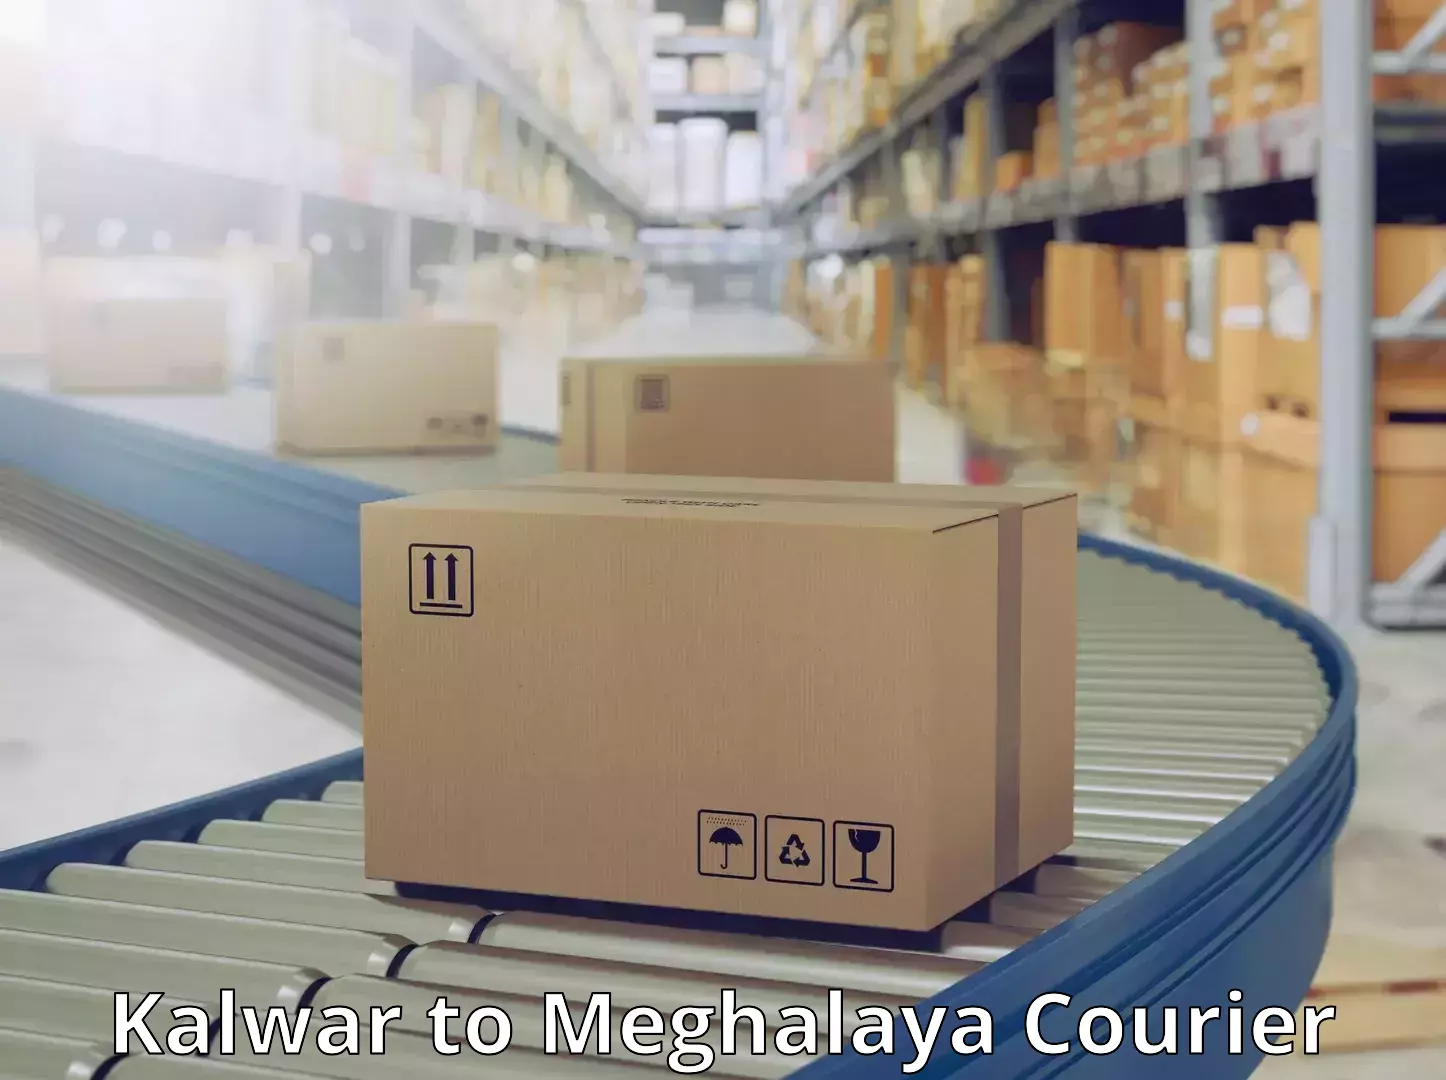 Courier insurance Kalwar to Meghalaya